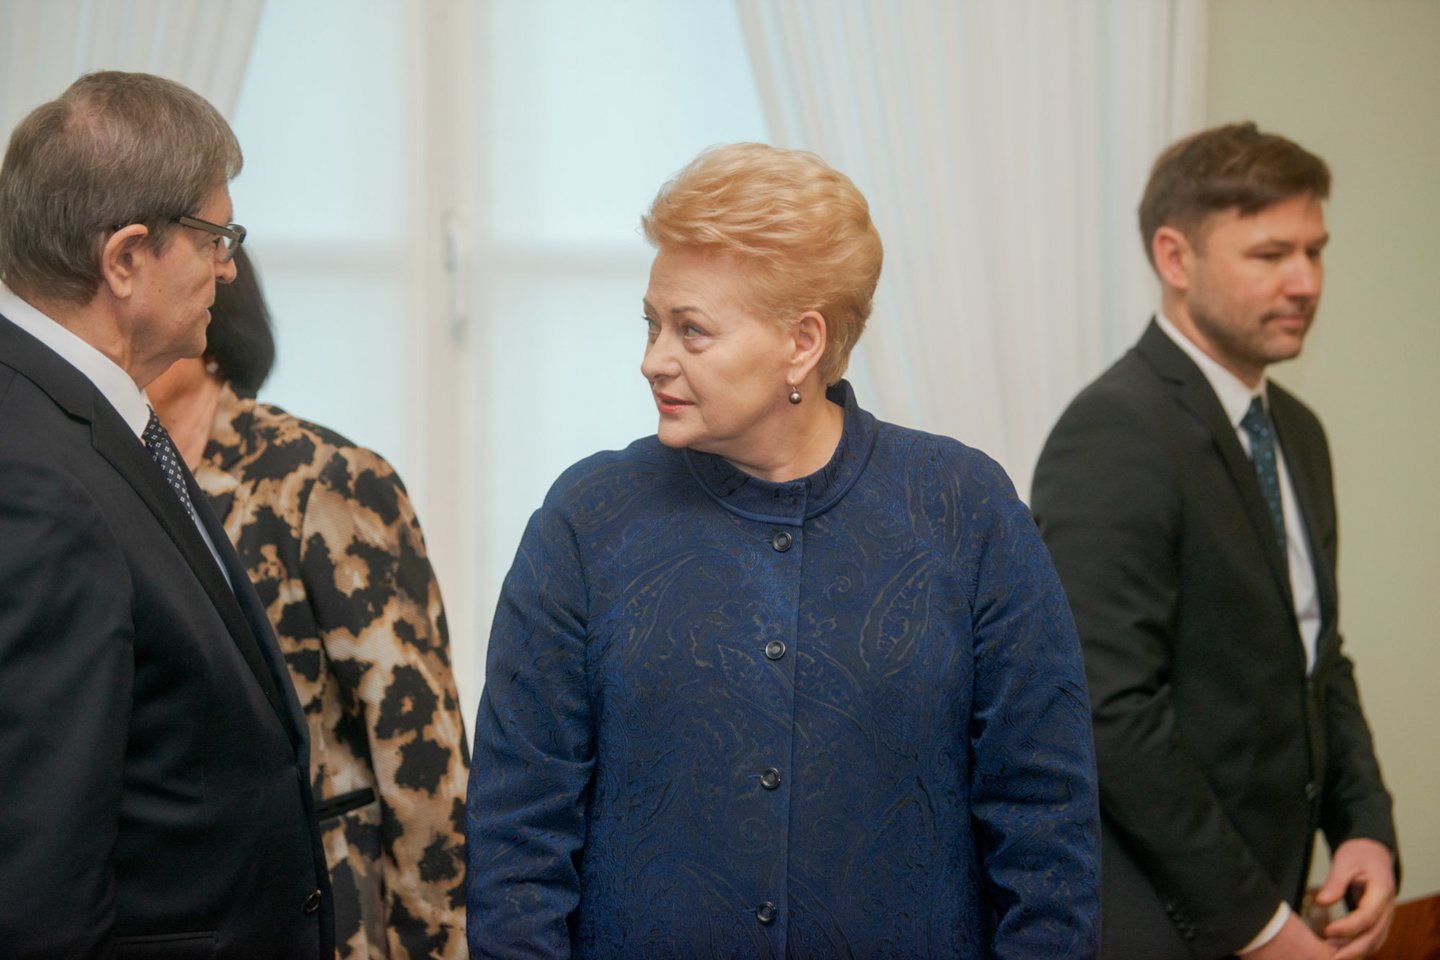  Ketvirtadienį D.Grybauskaitė su streikuojančiais mokytojais ir švietimo sektoriaus valdininkais aptarė susidariusią situaciją.<br>J.Stacevičiaus nuotr.